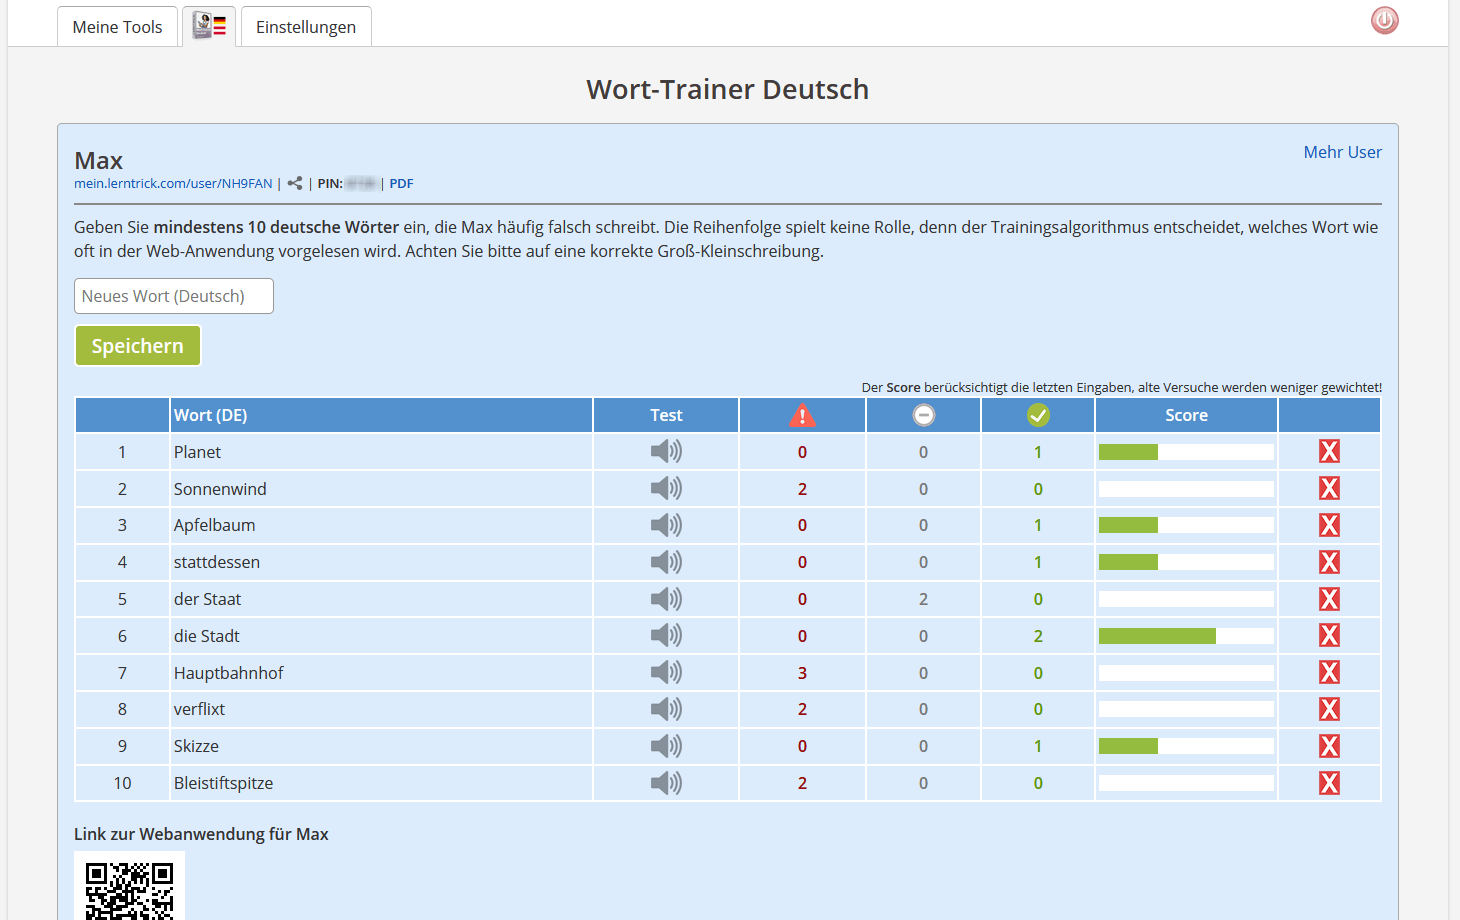 Übersicht des Wort-Trainers mit Wortliste und Statistiken